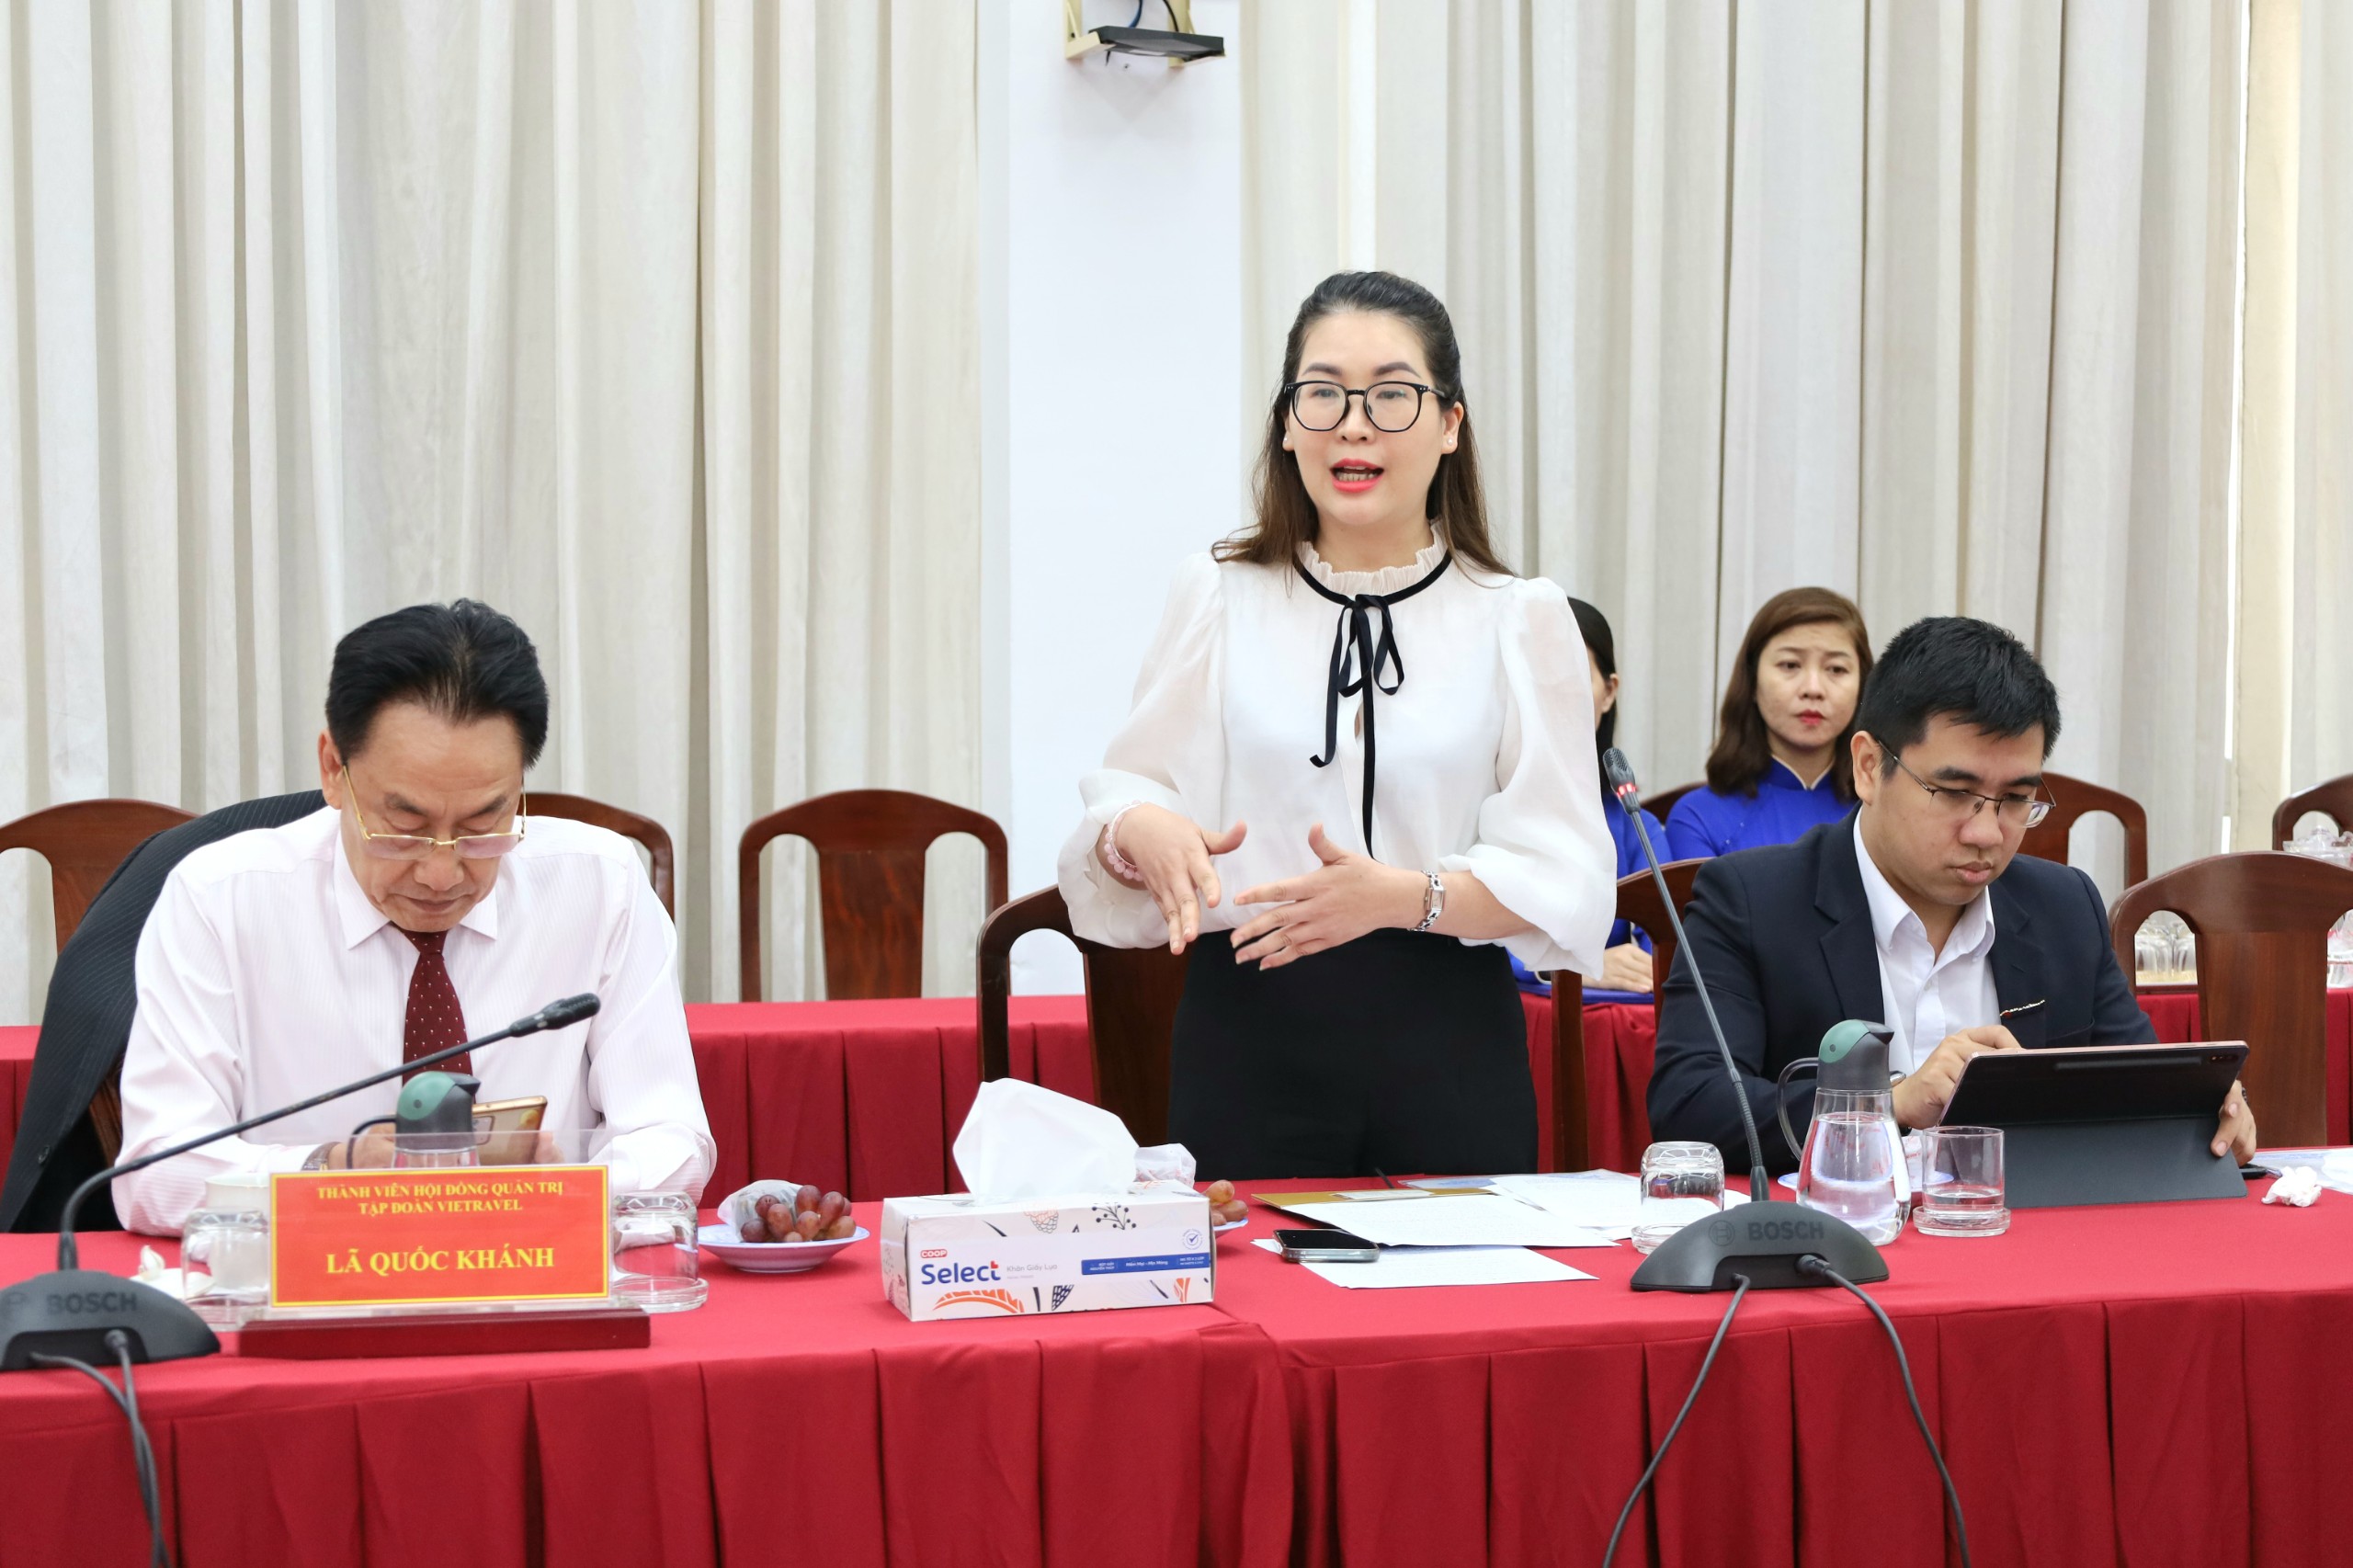 Bà Tạ Thị Tú Uyên - Giám đốc Ban Sản phẩm Dịch vụ Công ty Du lịch Vietravel phát biểu đóng góp về sản phẩm Du lịch Cần Thơ.